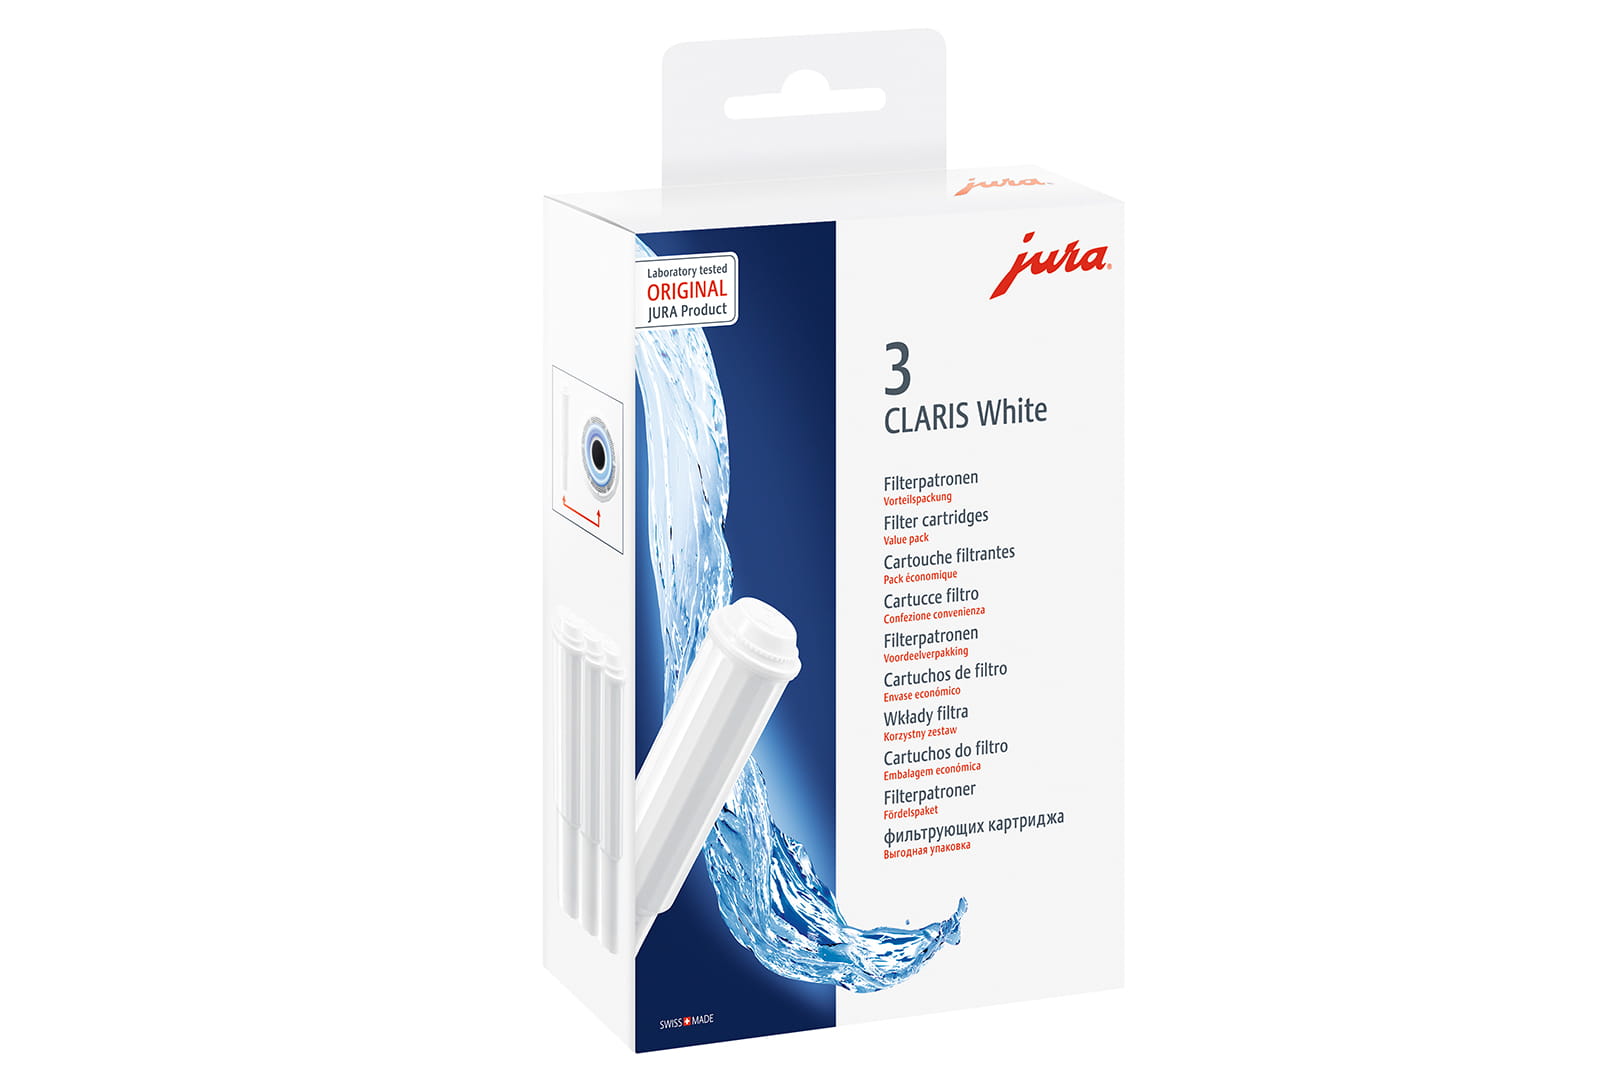 Filter cartridge CLARIS White - International